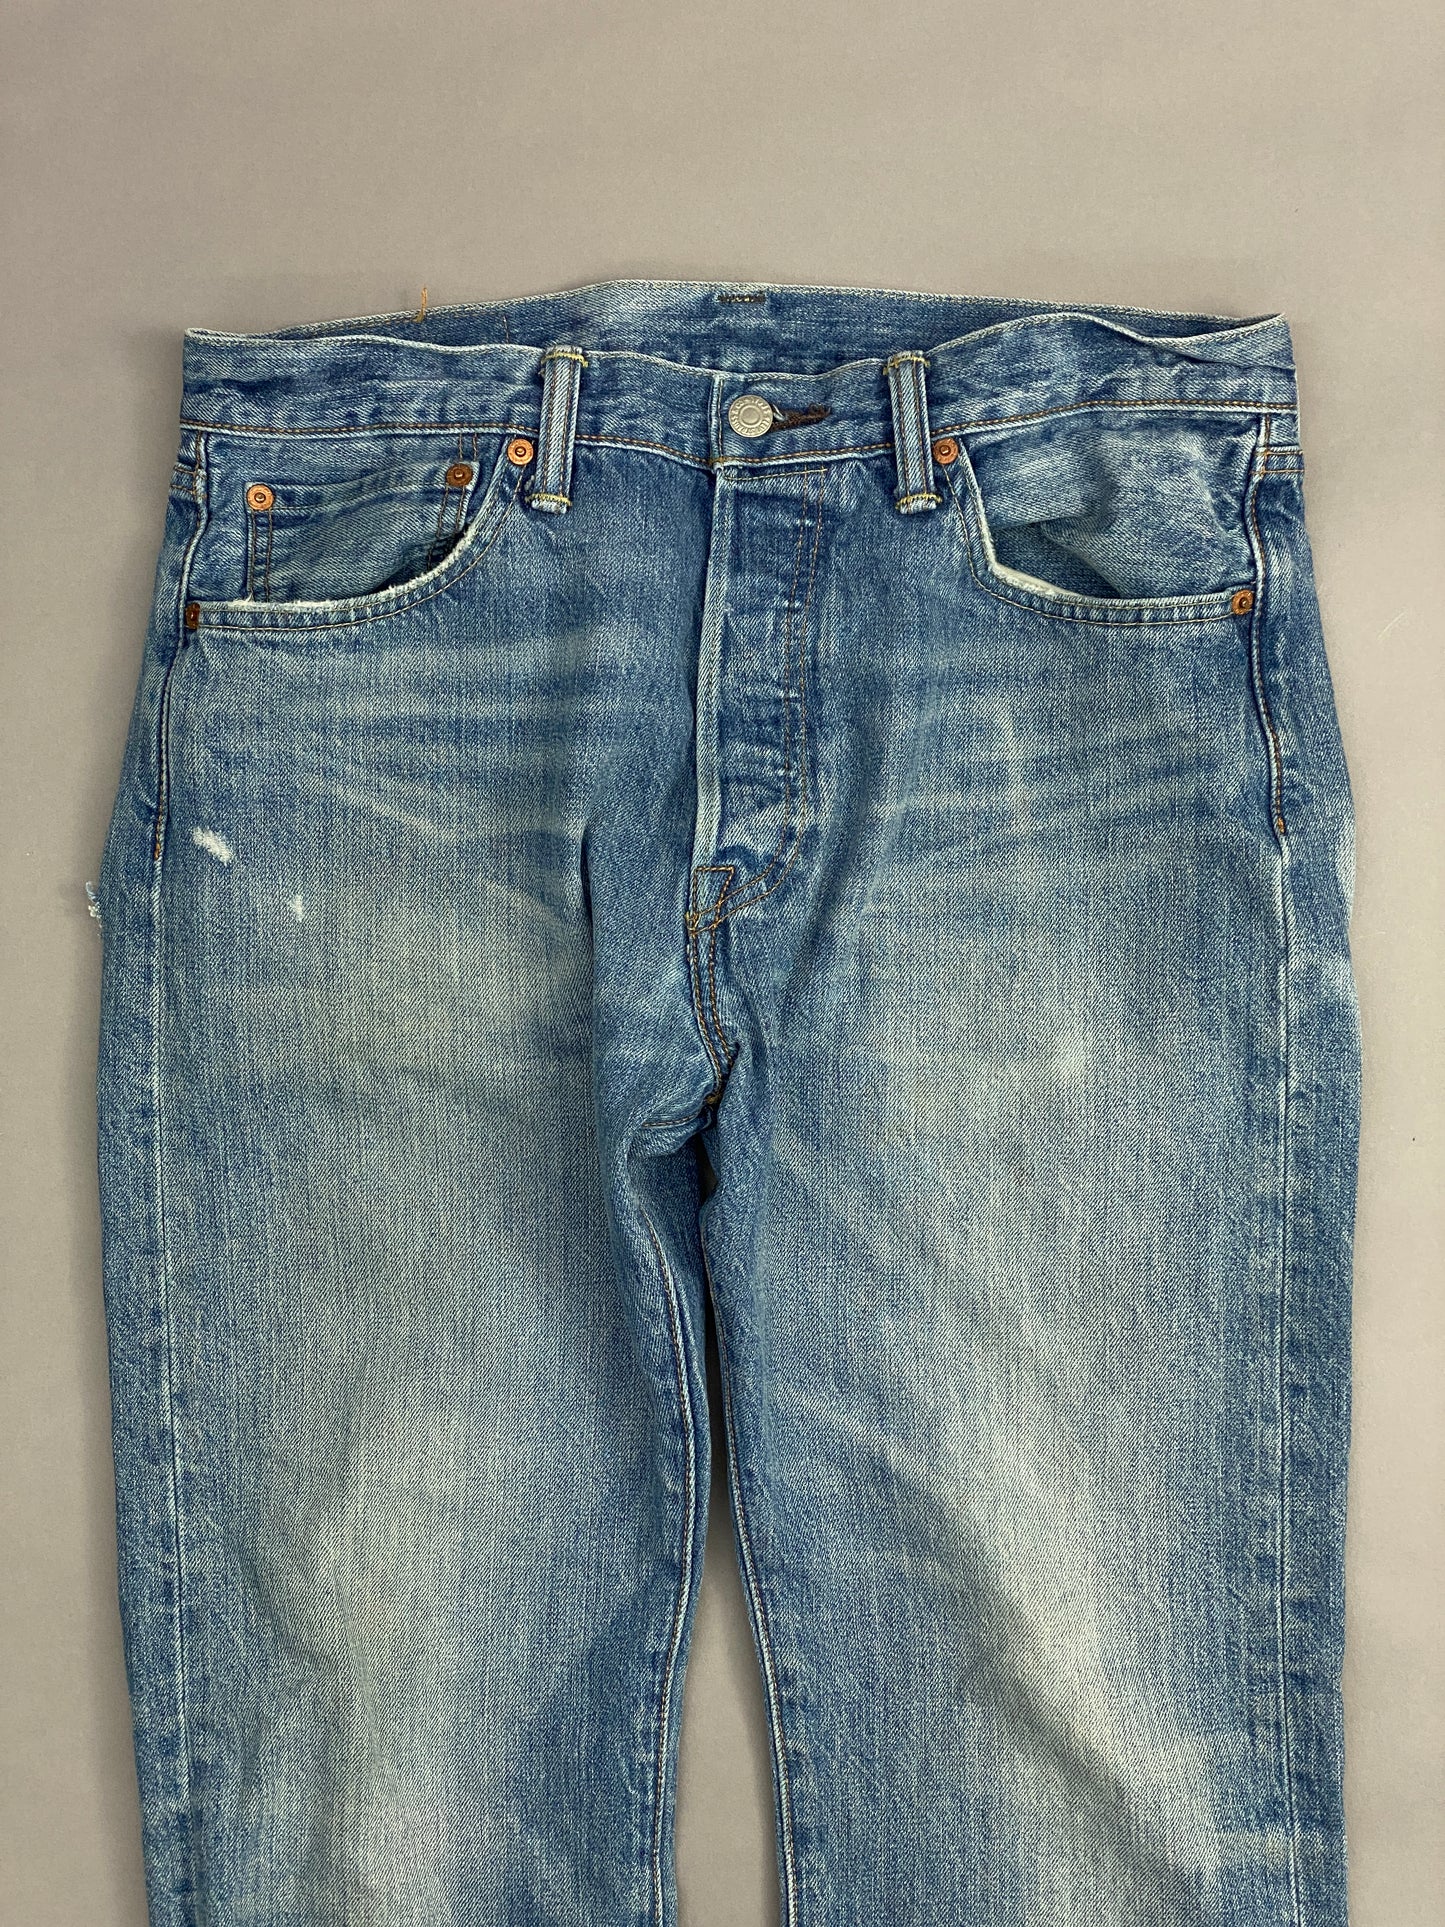 Levis 501 Jeans - 33x30